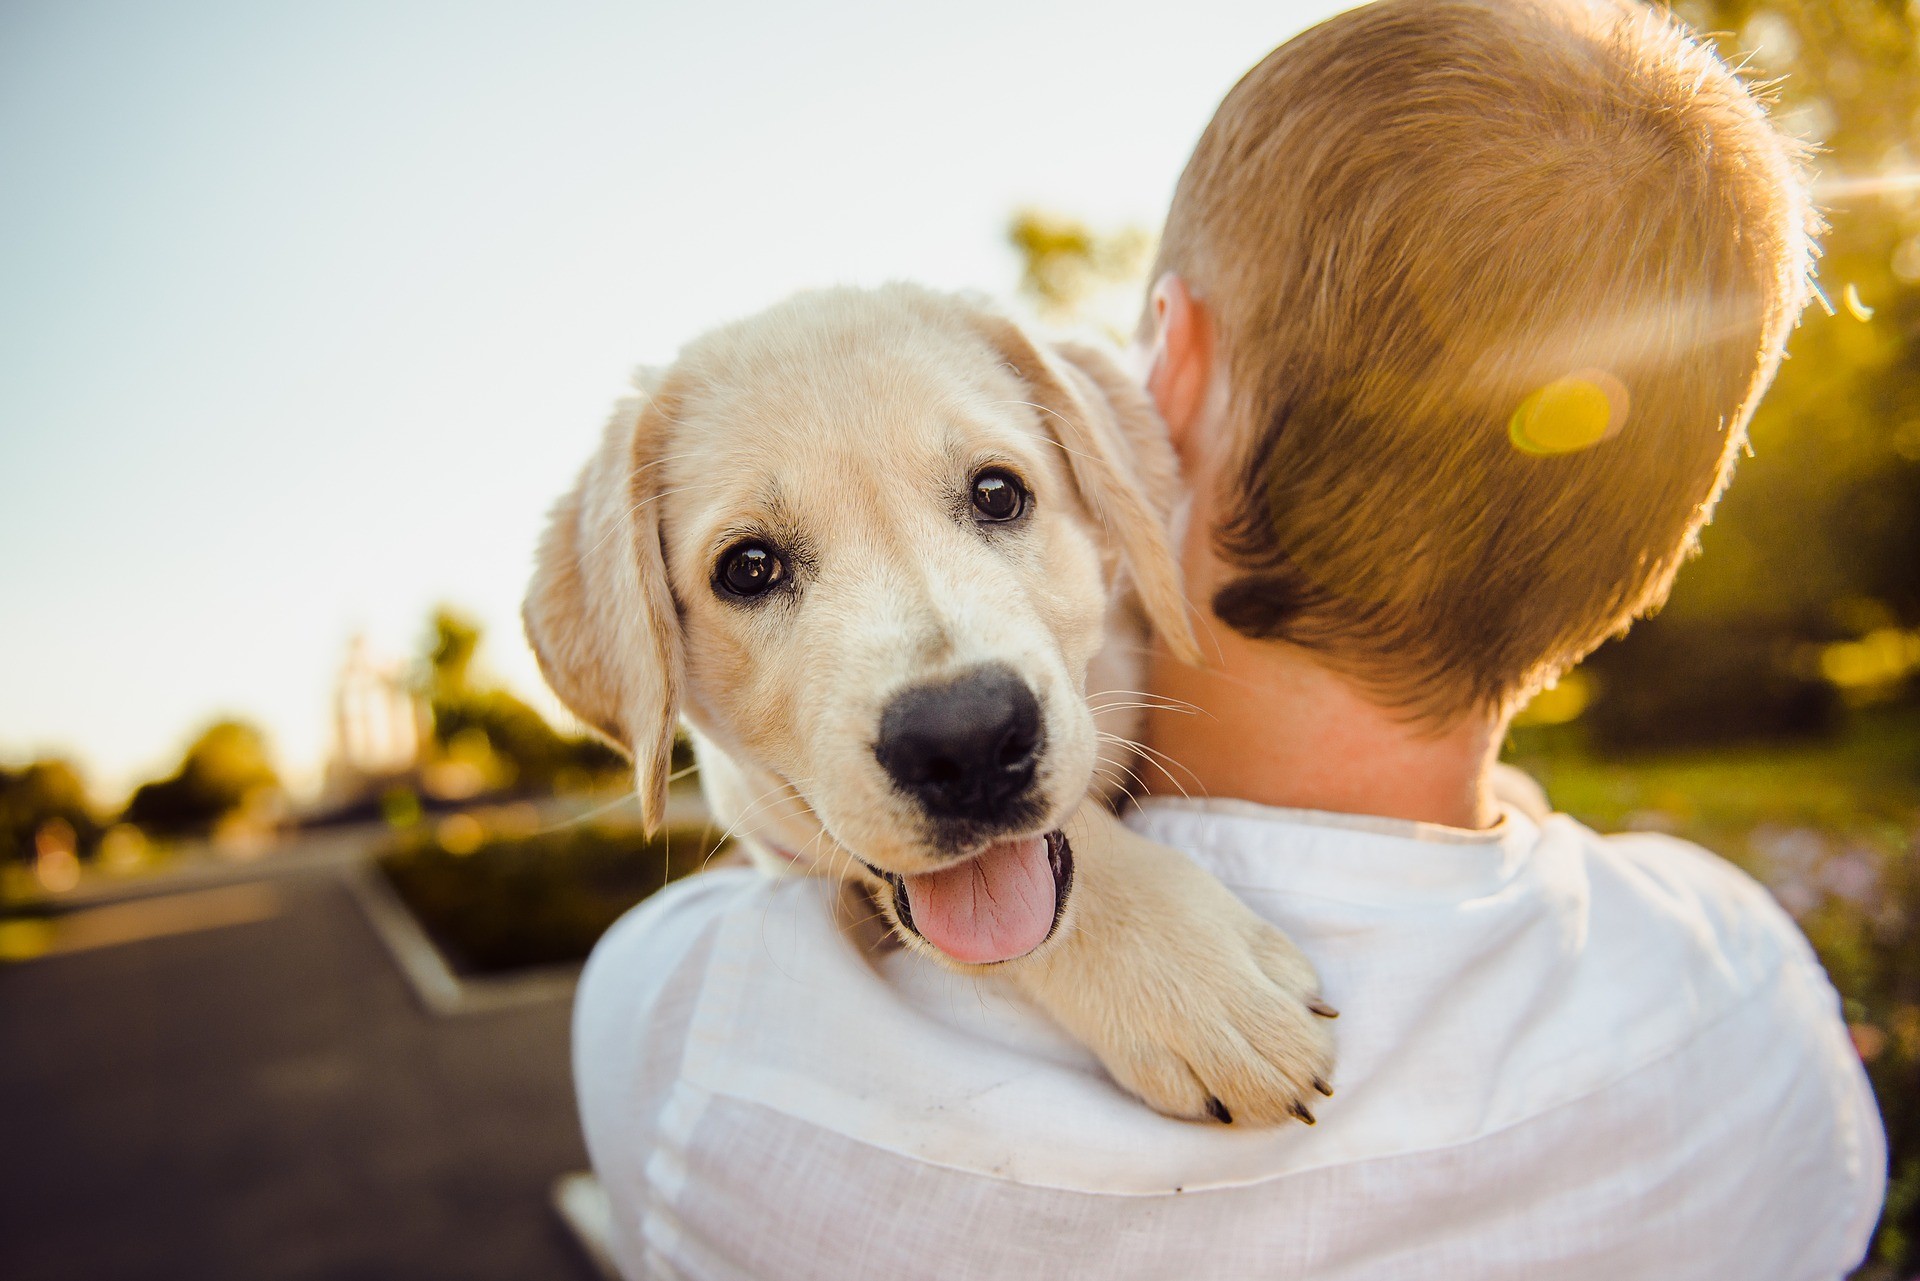 Adotar um cão pode ser uma boa ideia para quem quer viver mais e ter um companheiro fiel e felpudo (Foto: Pixabay)